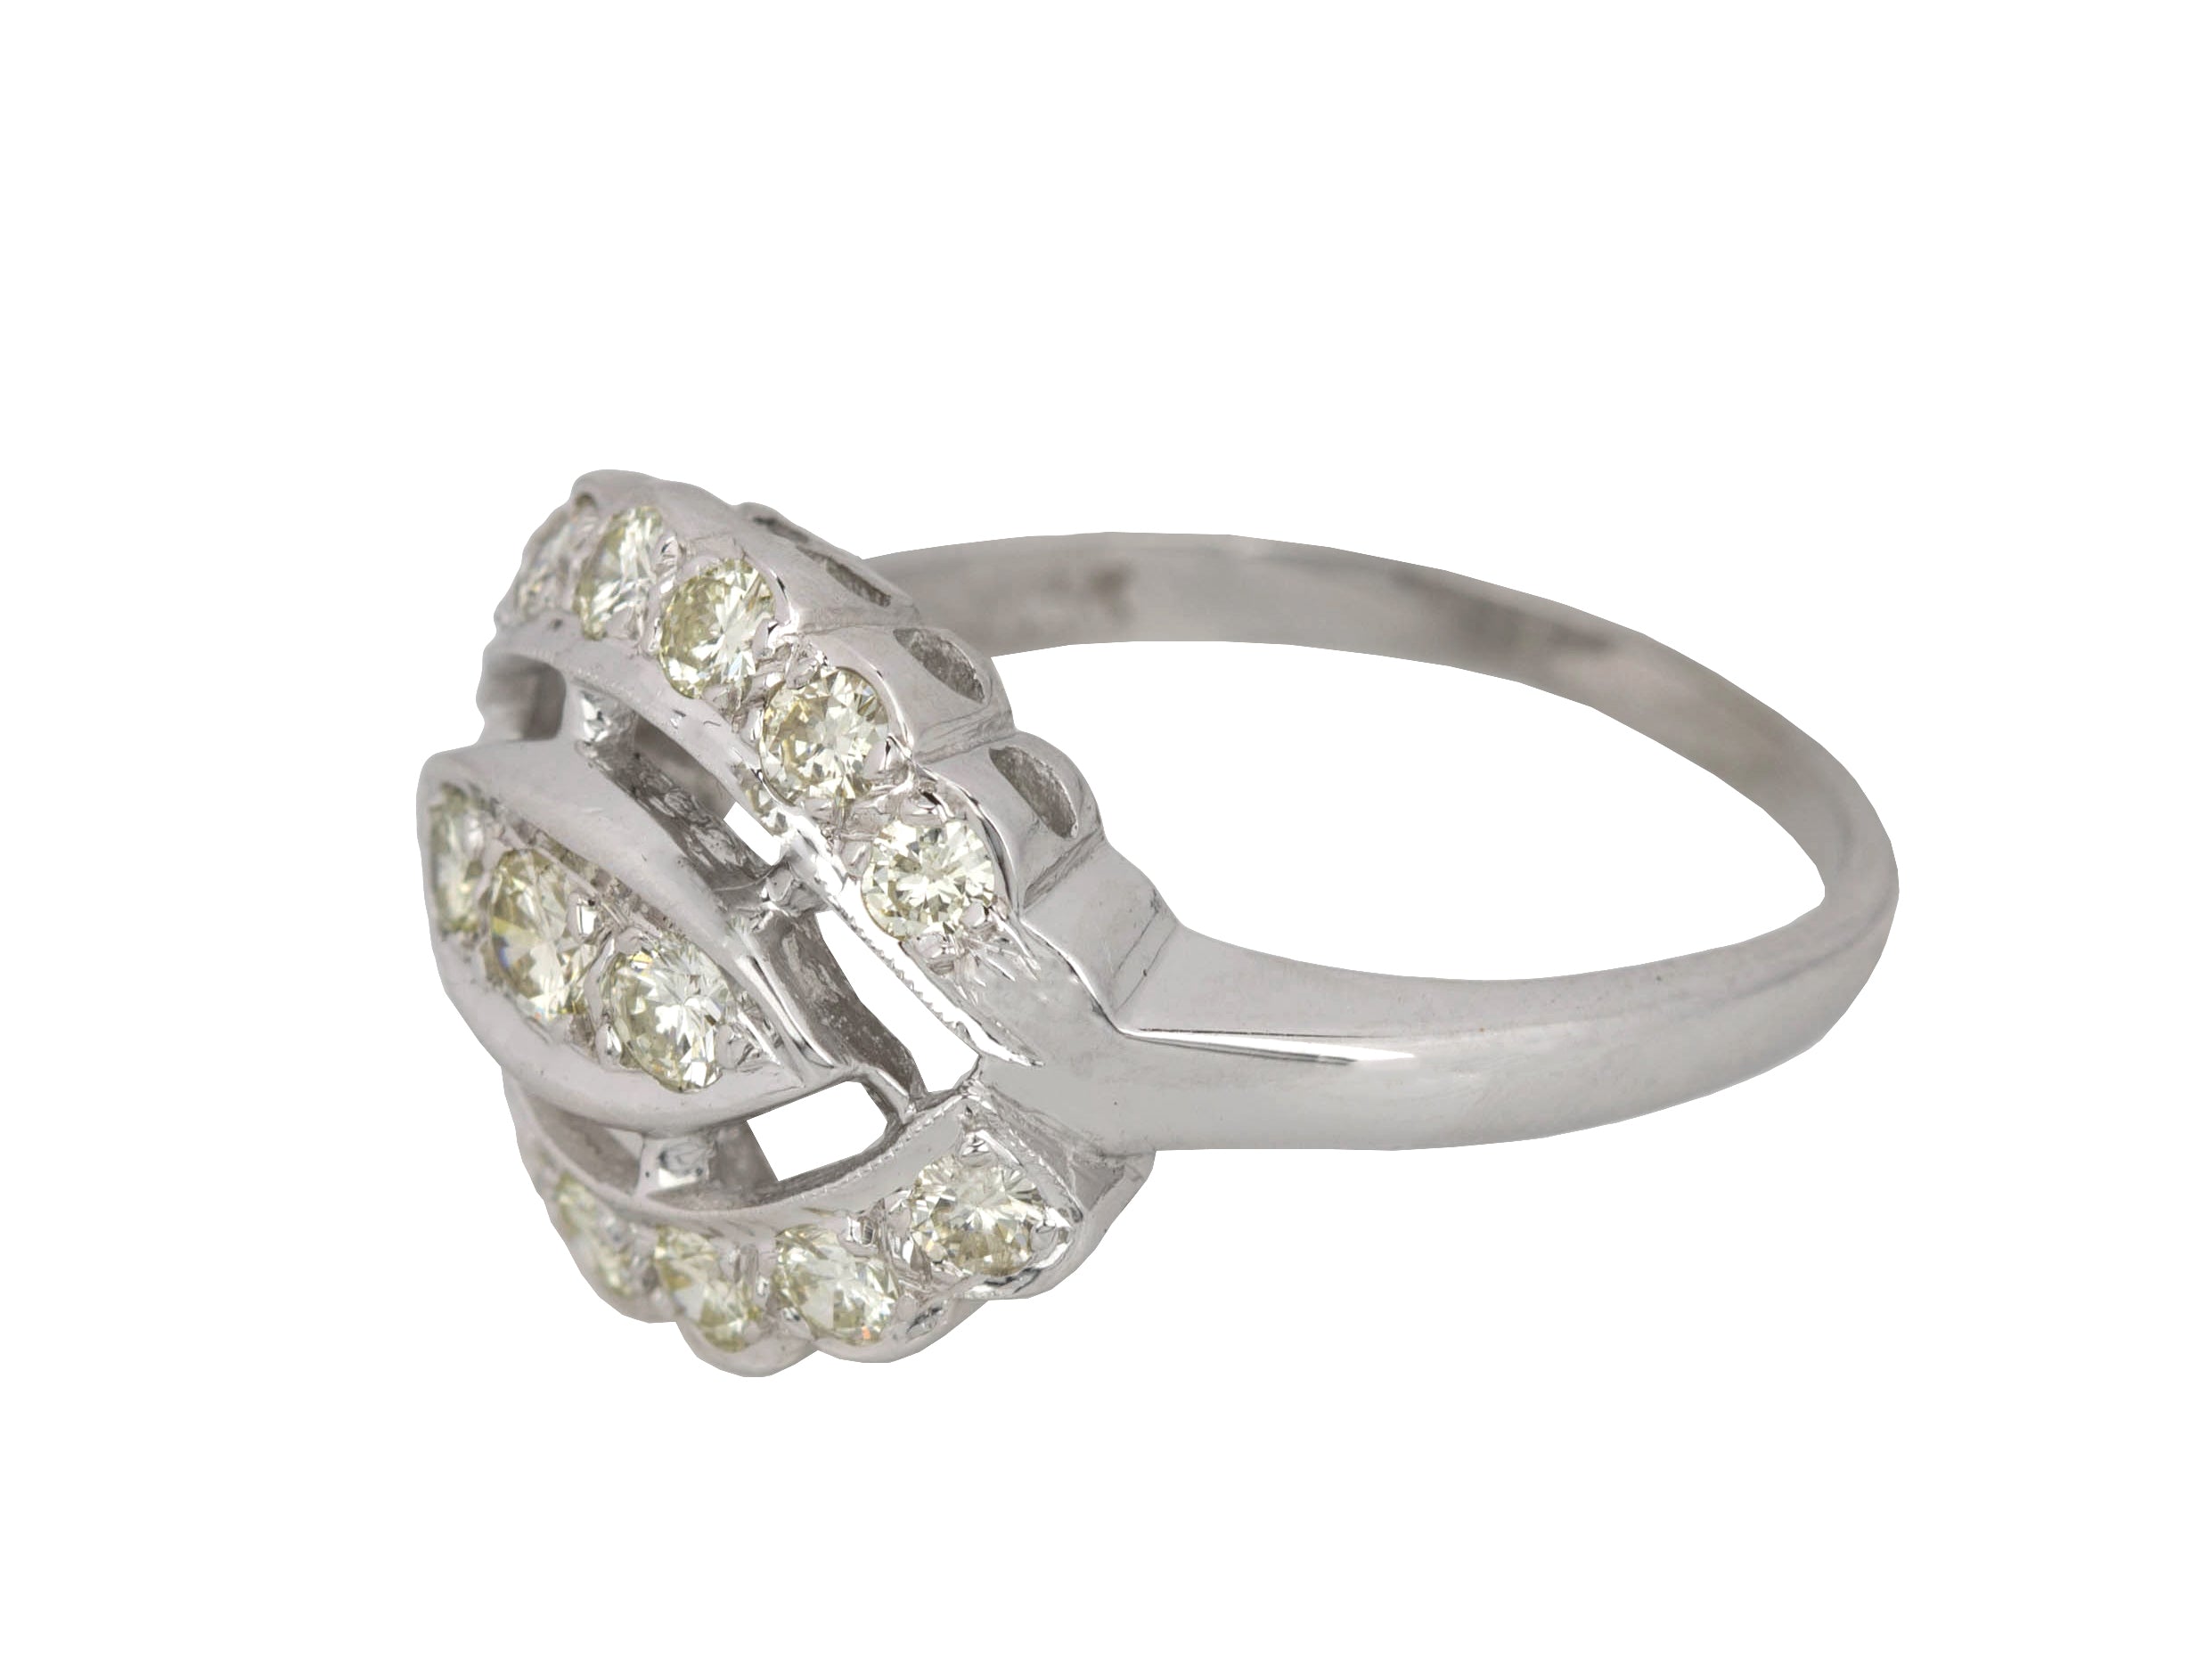 Women's Modernist 14k White Gold 0.80ctw Diamond Ornate Cocktail Ring